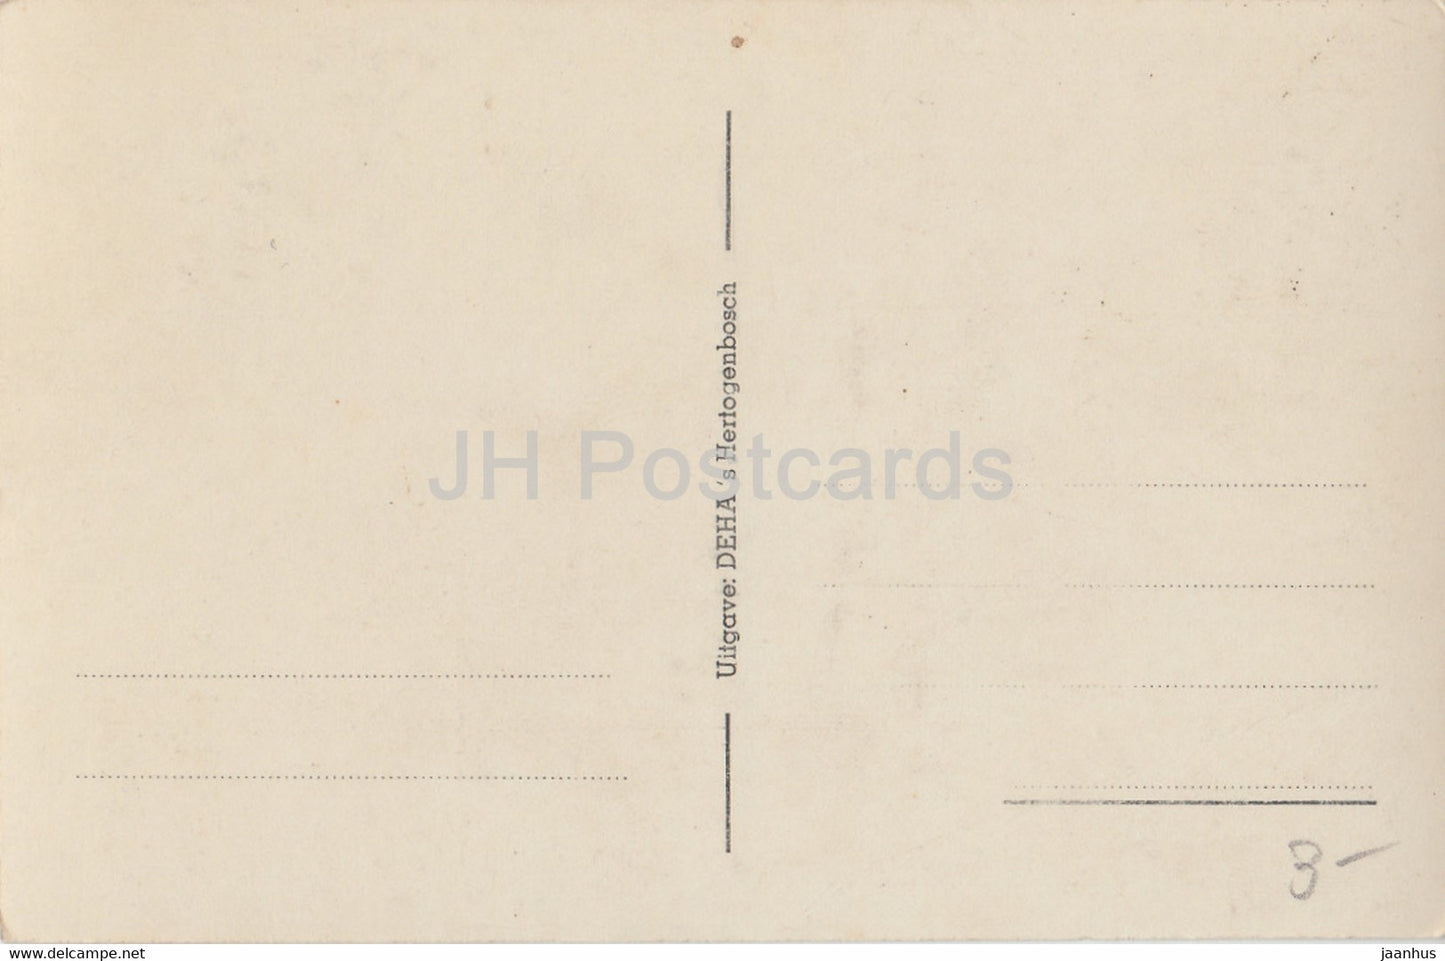 Hoogkoor met Koorgestoelte en Bisschoptroon St Jans Basiliek S Hertogenbosch - old postcard - Netherlands - unused